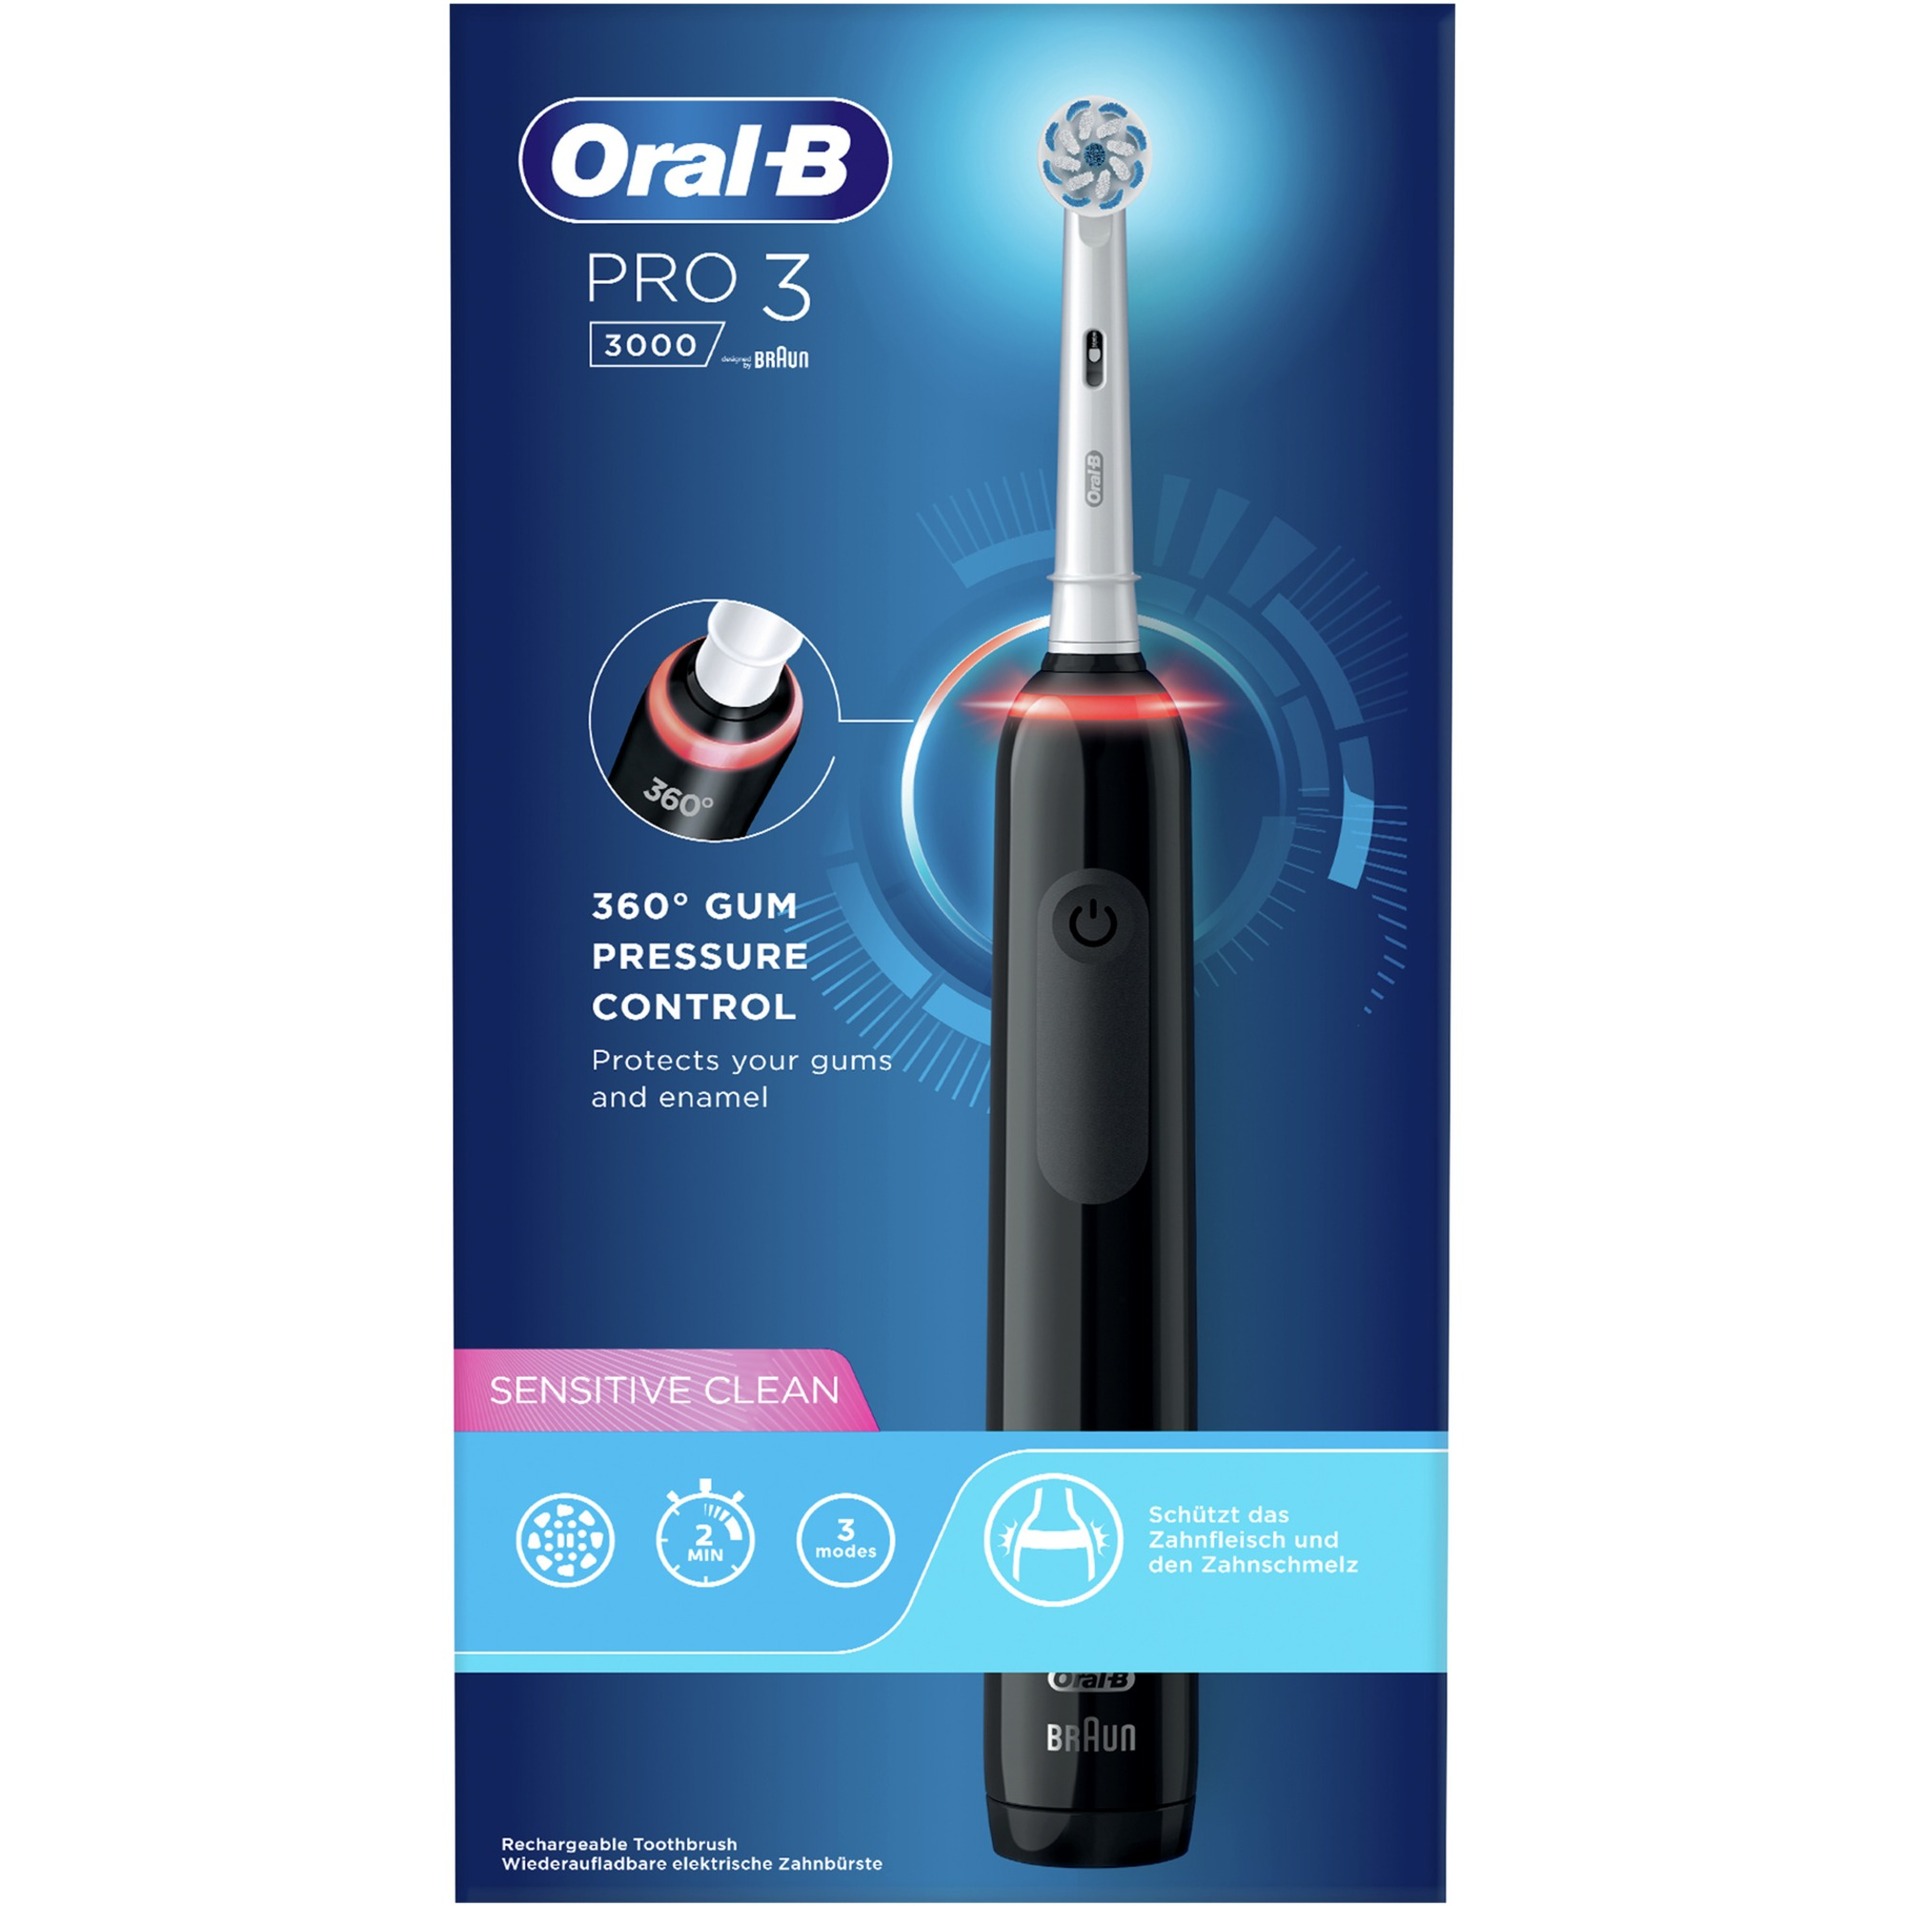 Image of Alternate - Oral-B Pro 3 3000 Sensitive Clean, Elektrische Zahnbürste online einkaufen bei Alternate